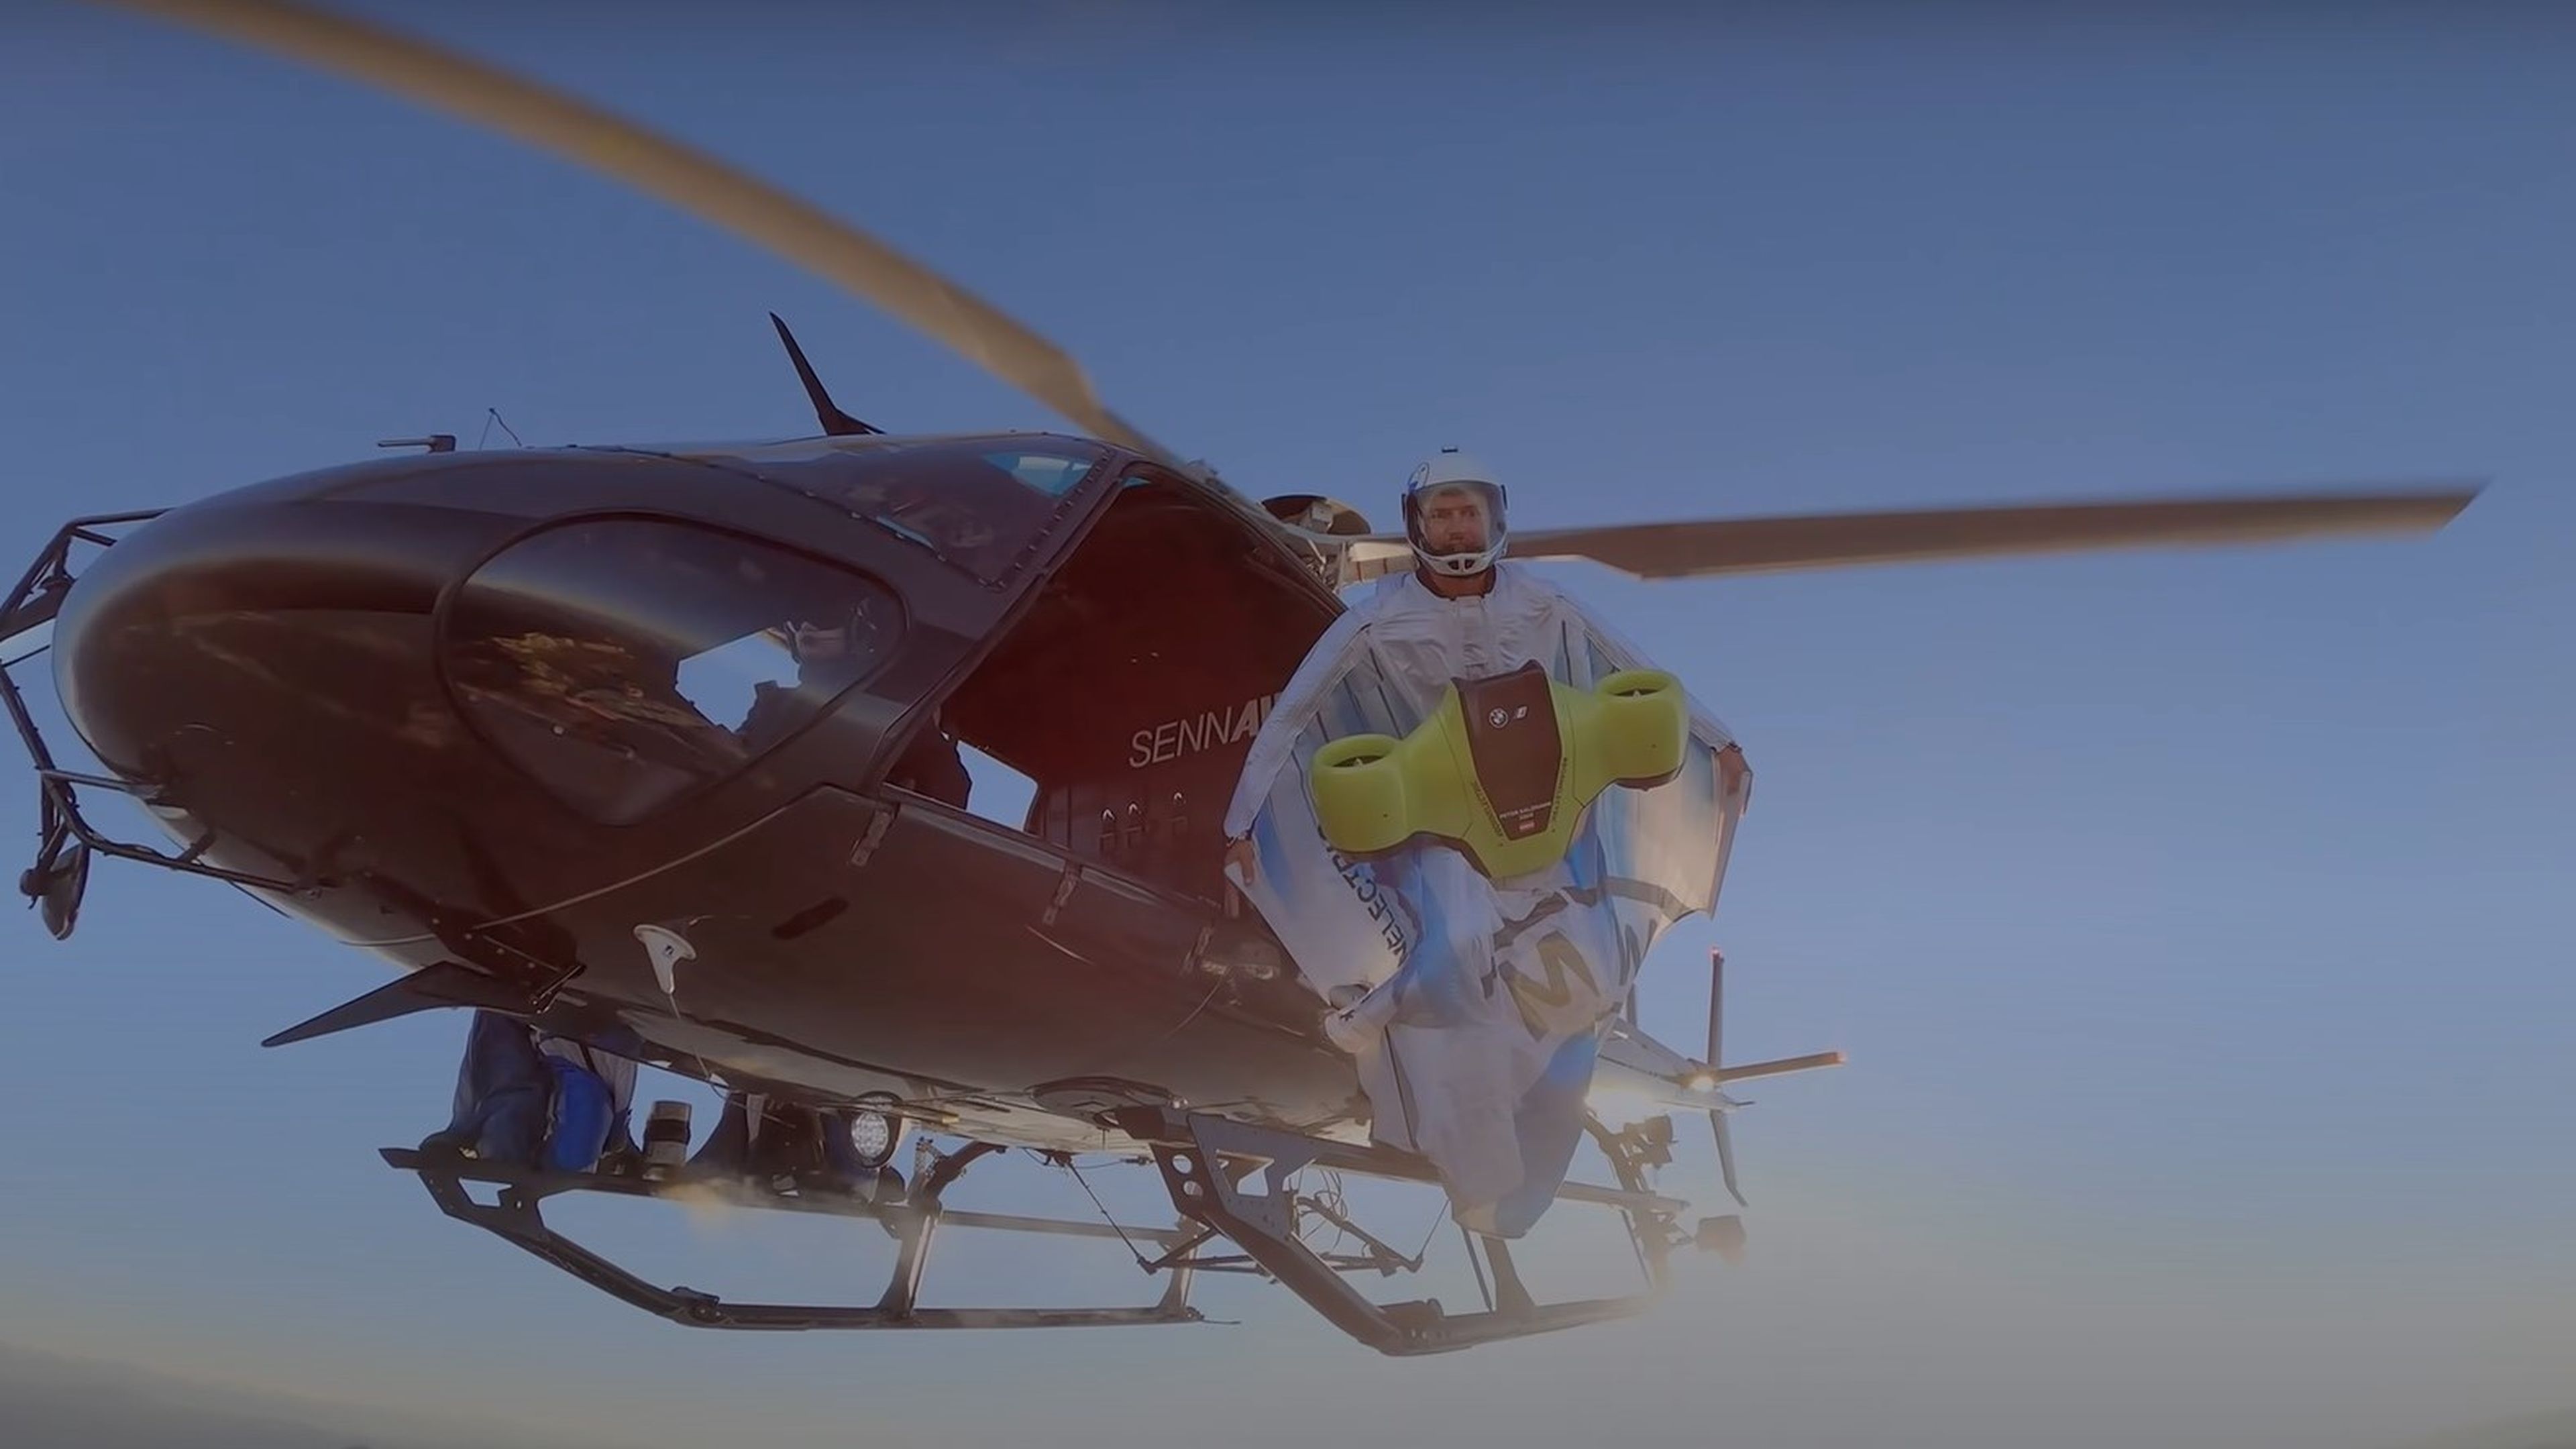 Peter Salzmann se lanza desde el helicóptero con el traje de alas eléctrico